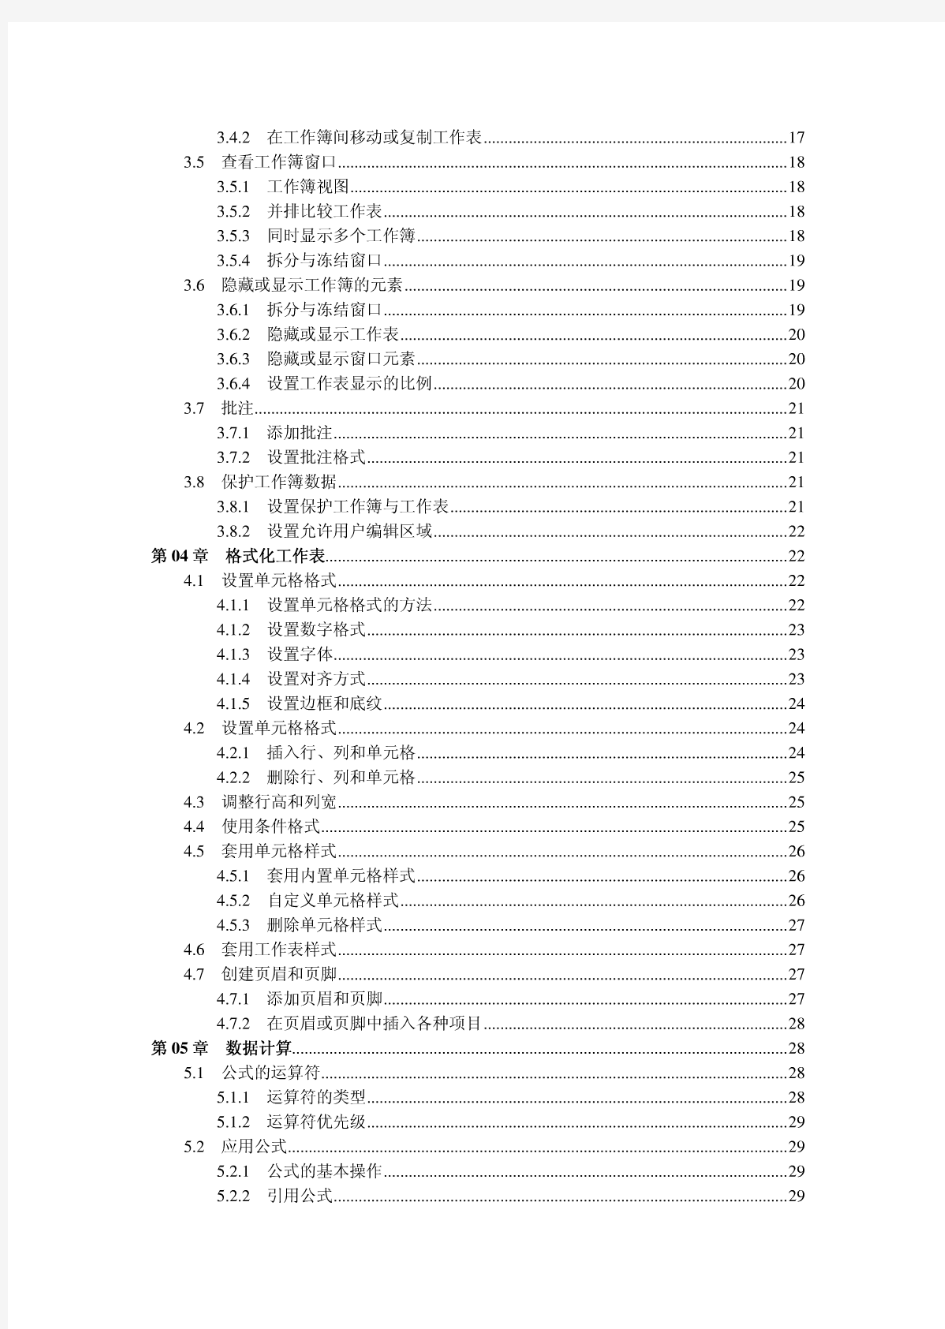 中文版Excel2007实用教程